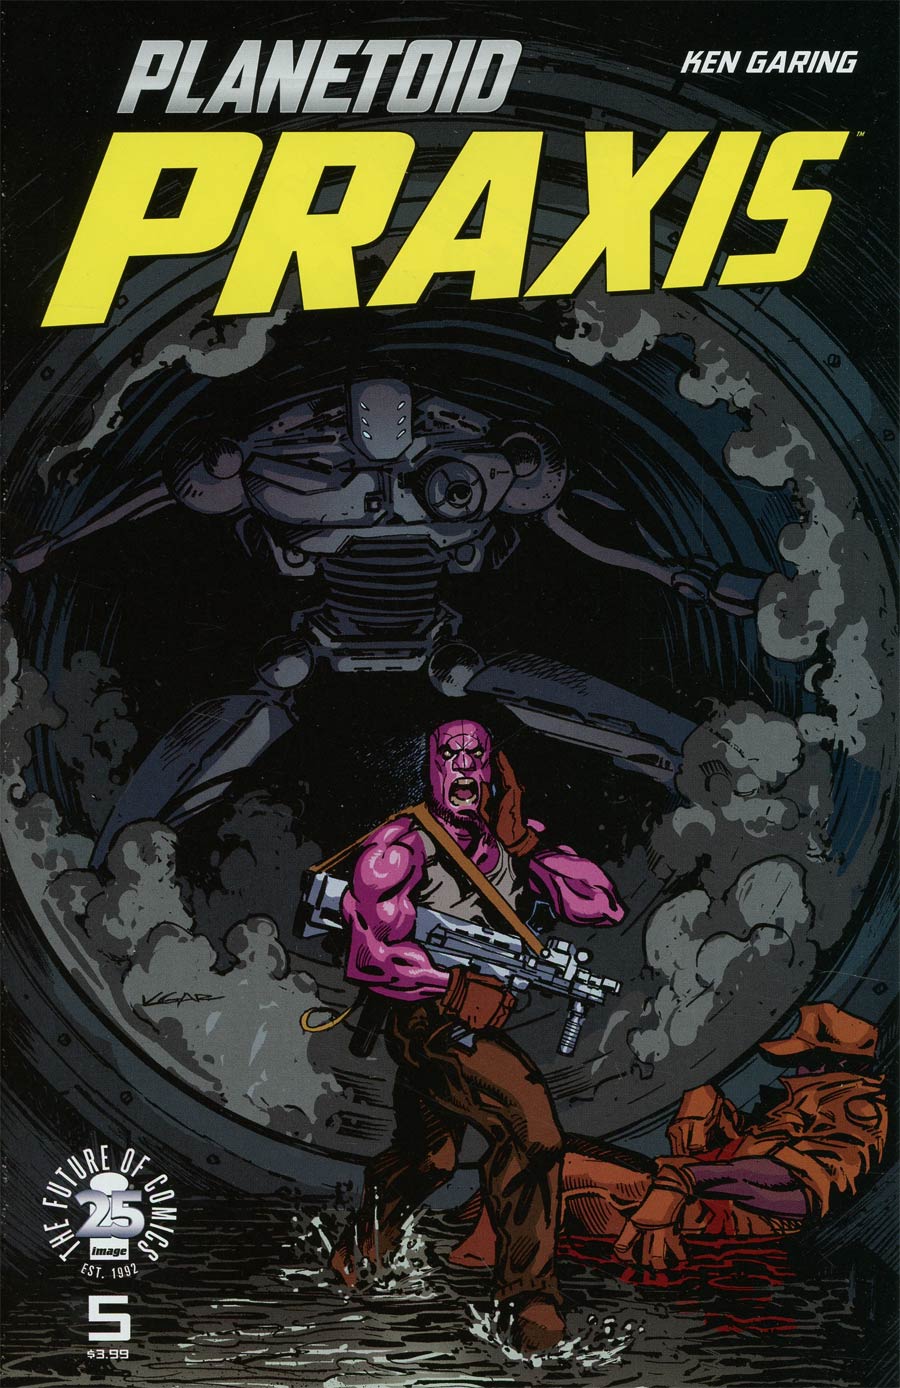 Planetoid Praxis #5